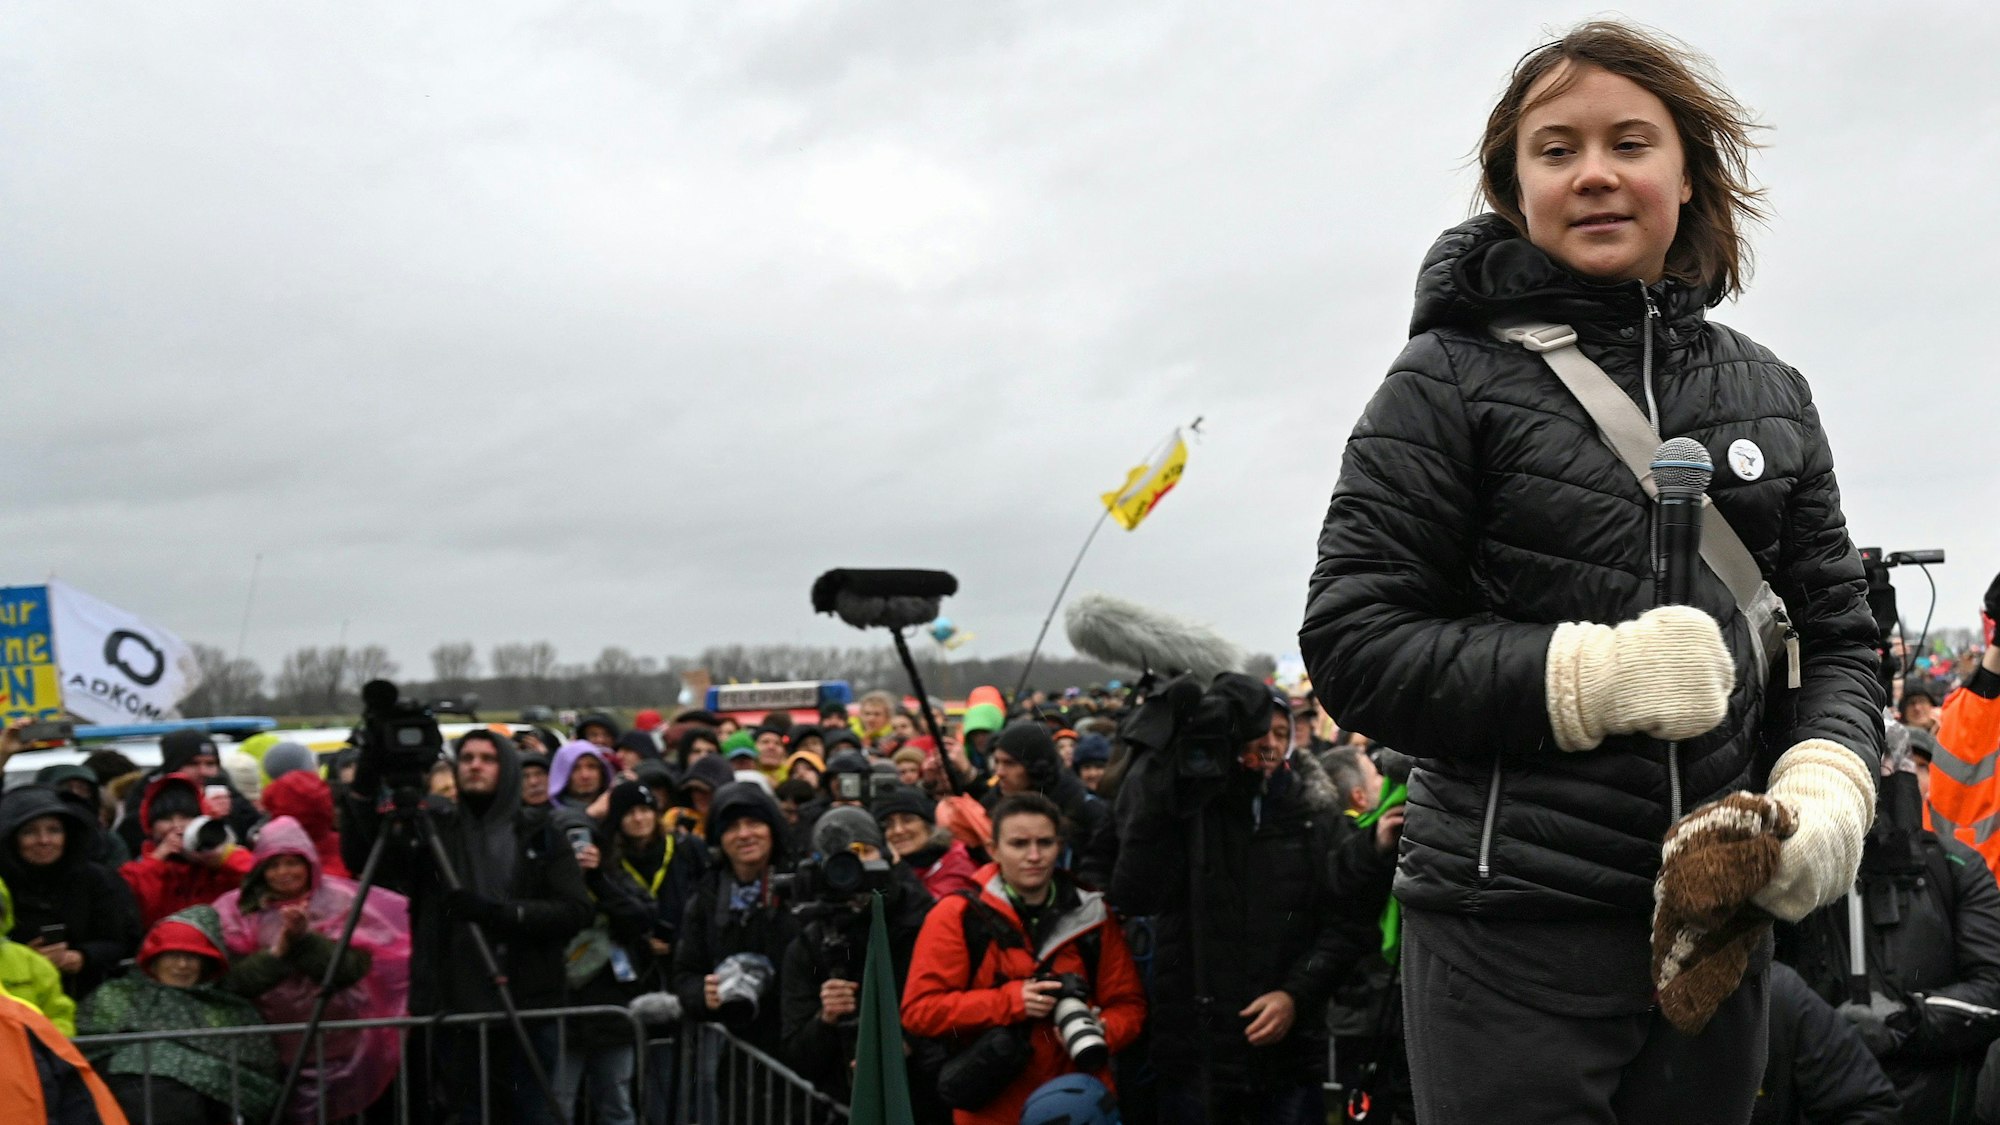 Die bekannte Klima-Aktivistin Greta Thunberg hält ein Mikrofon während der Kundgebung nahe Lützerath am Samstag.